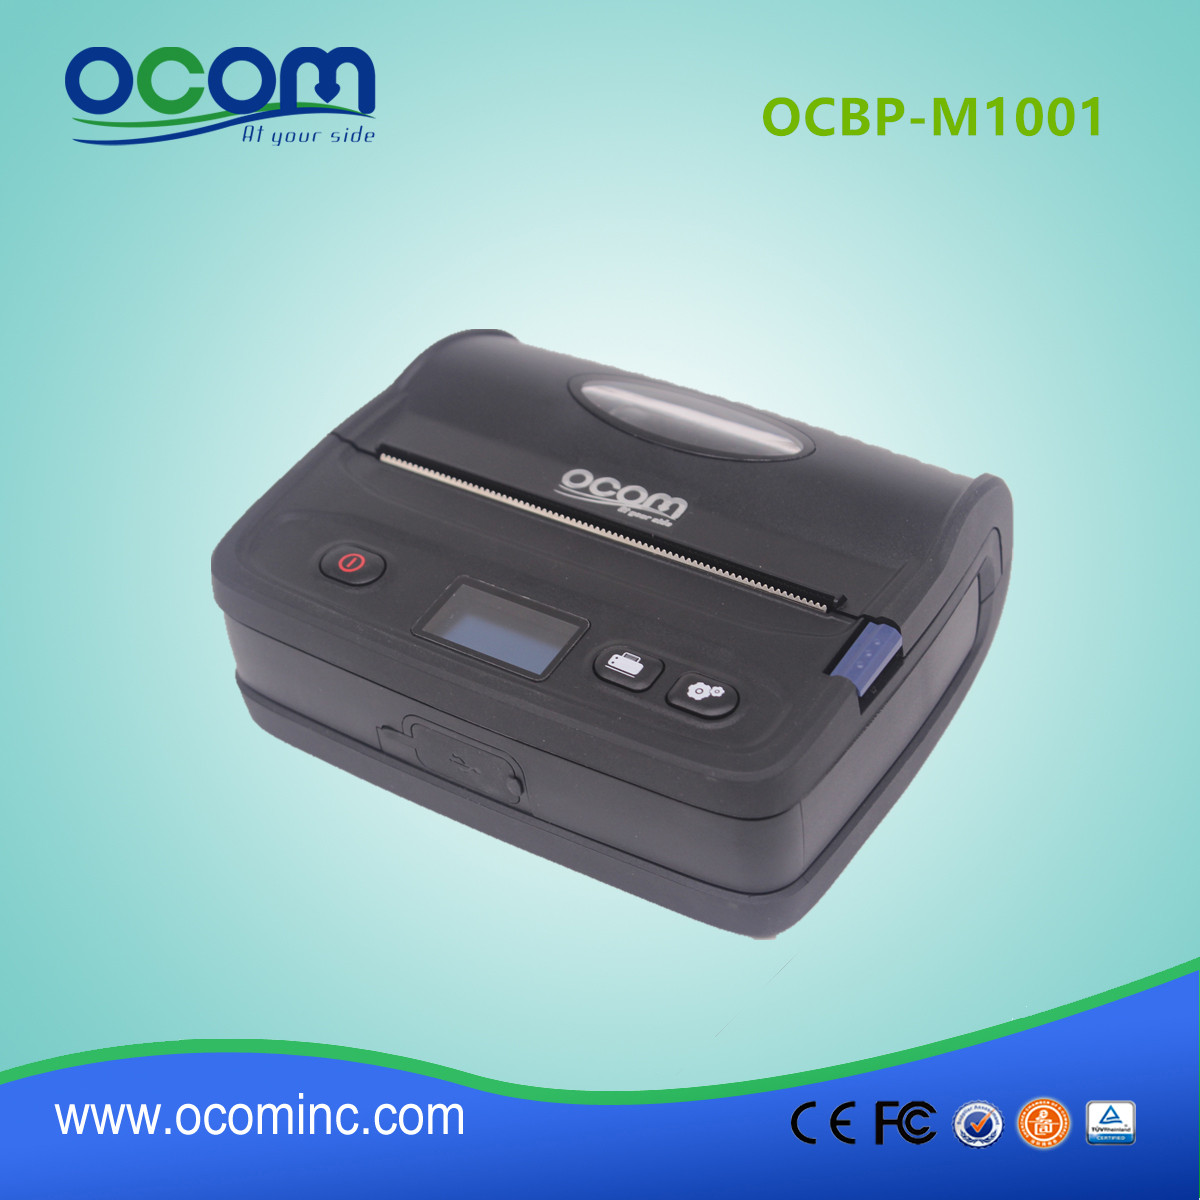 OCBP-M1001 手持式安卓蓝牙热敏打印机